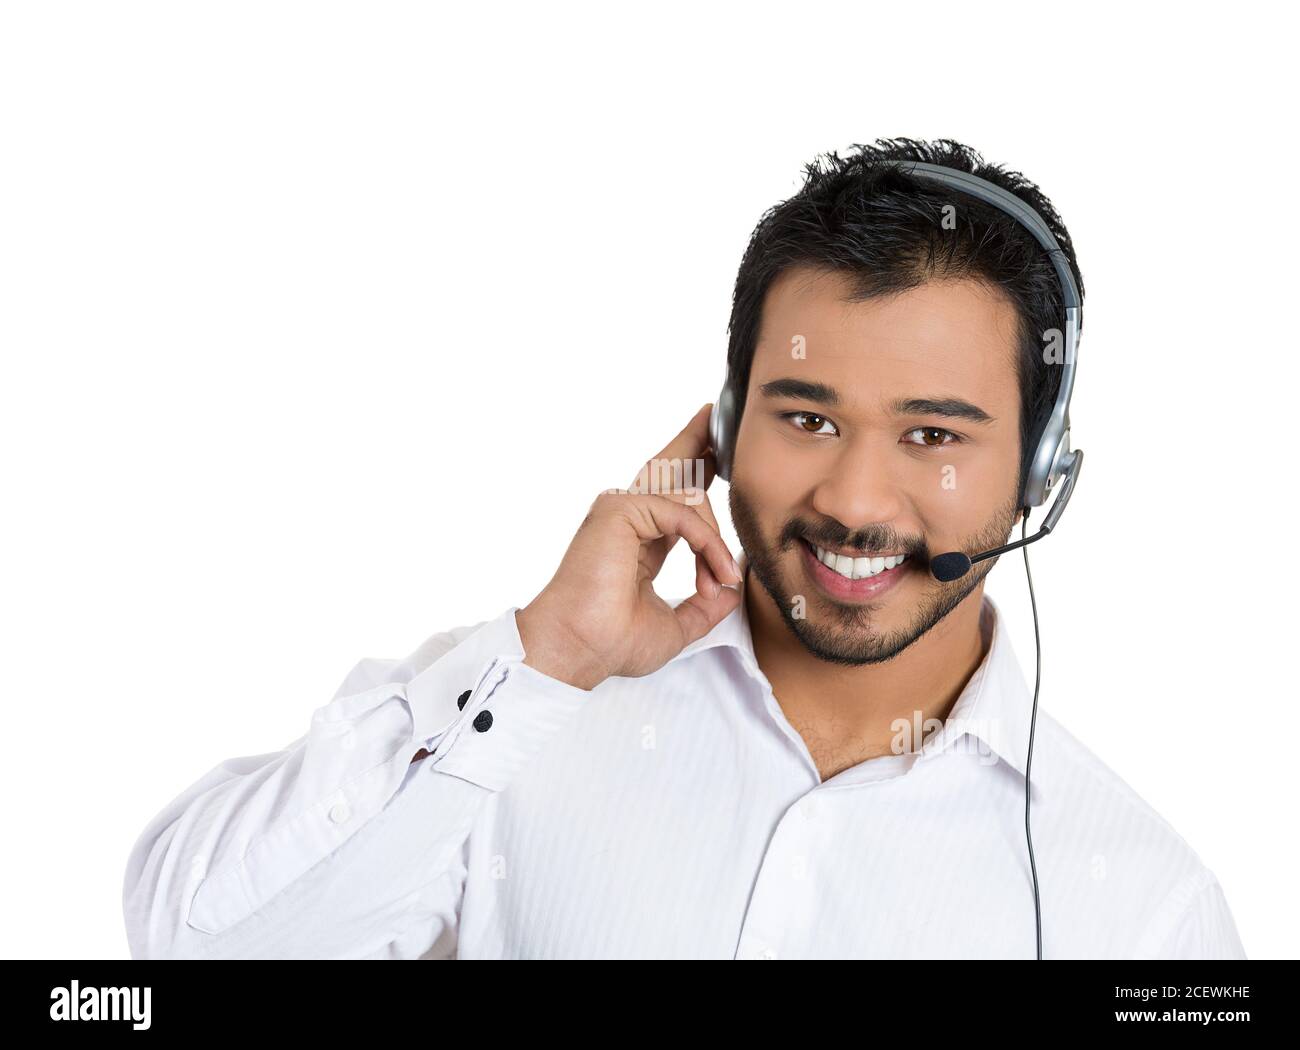 Nahaufnahme Porträt eines männlichen Kundendienstmitarbeiters oder Callcenter-Mitarbeiters oder Bedieners oder Support-Personals, das mit einem Kopfsatz spricht, isoliert auf Weiß Stockfoto